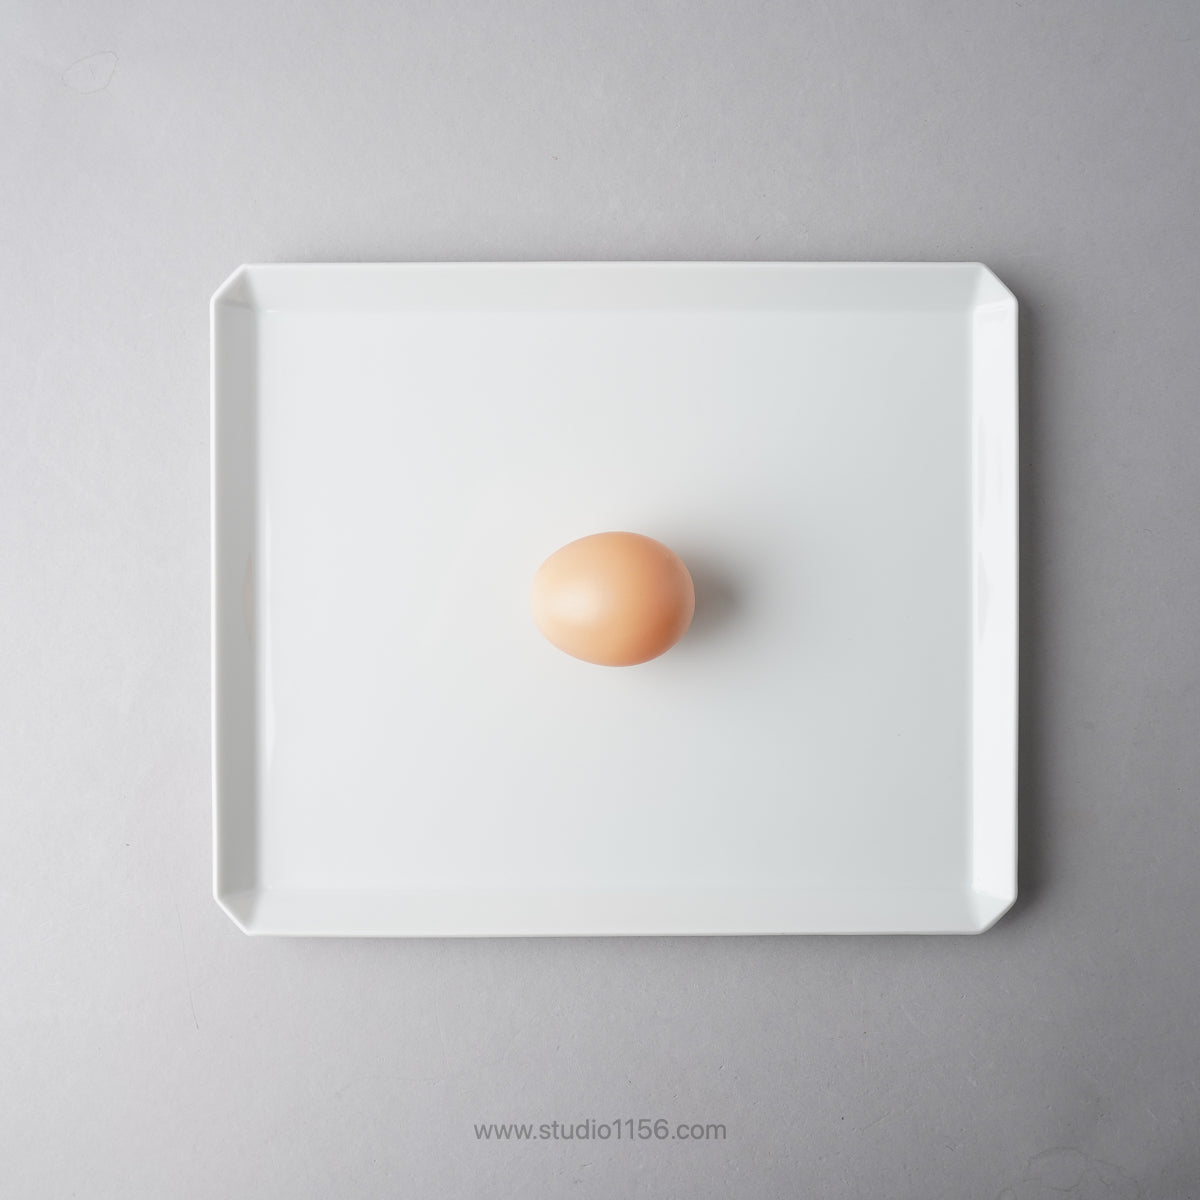 有田焼 スクエアプレート プレーン ホワイト / TY Square Plate Plain White 1616 / Arita Japan Studio1156